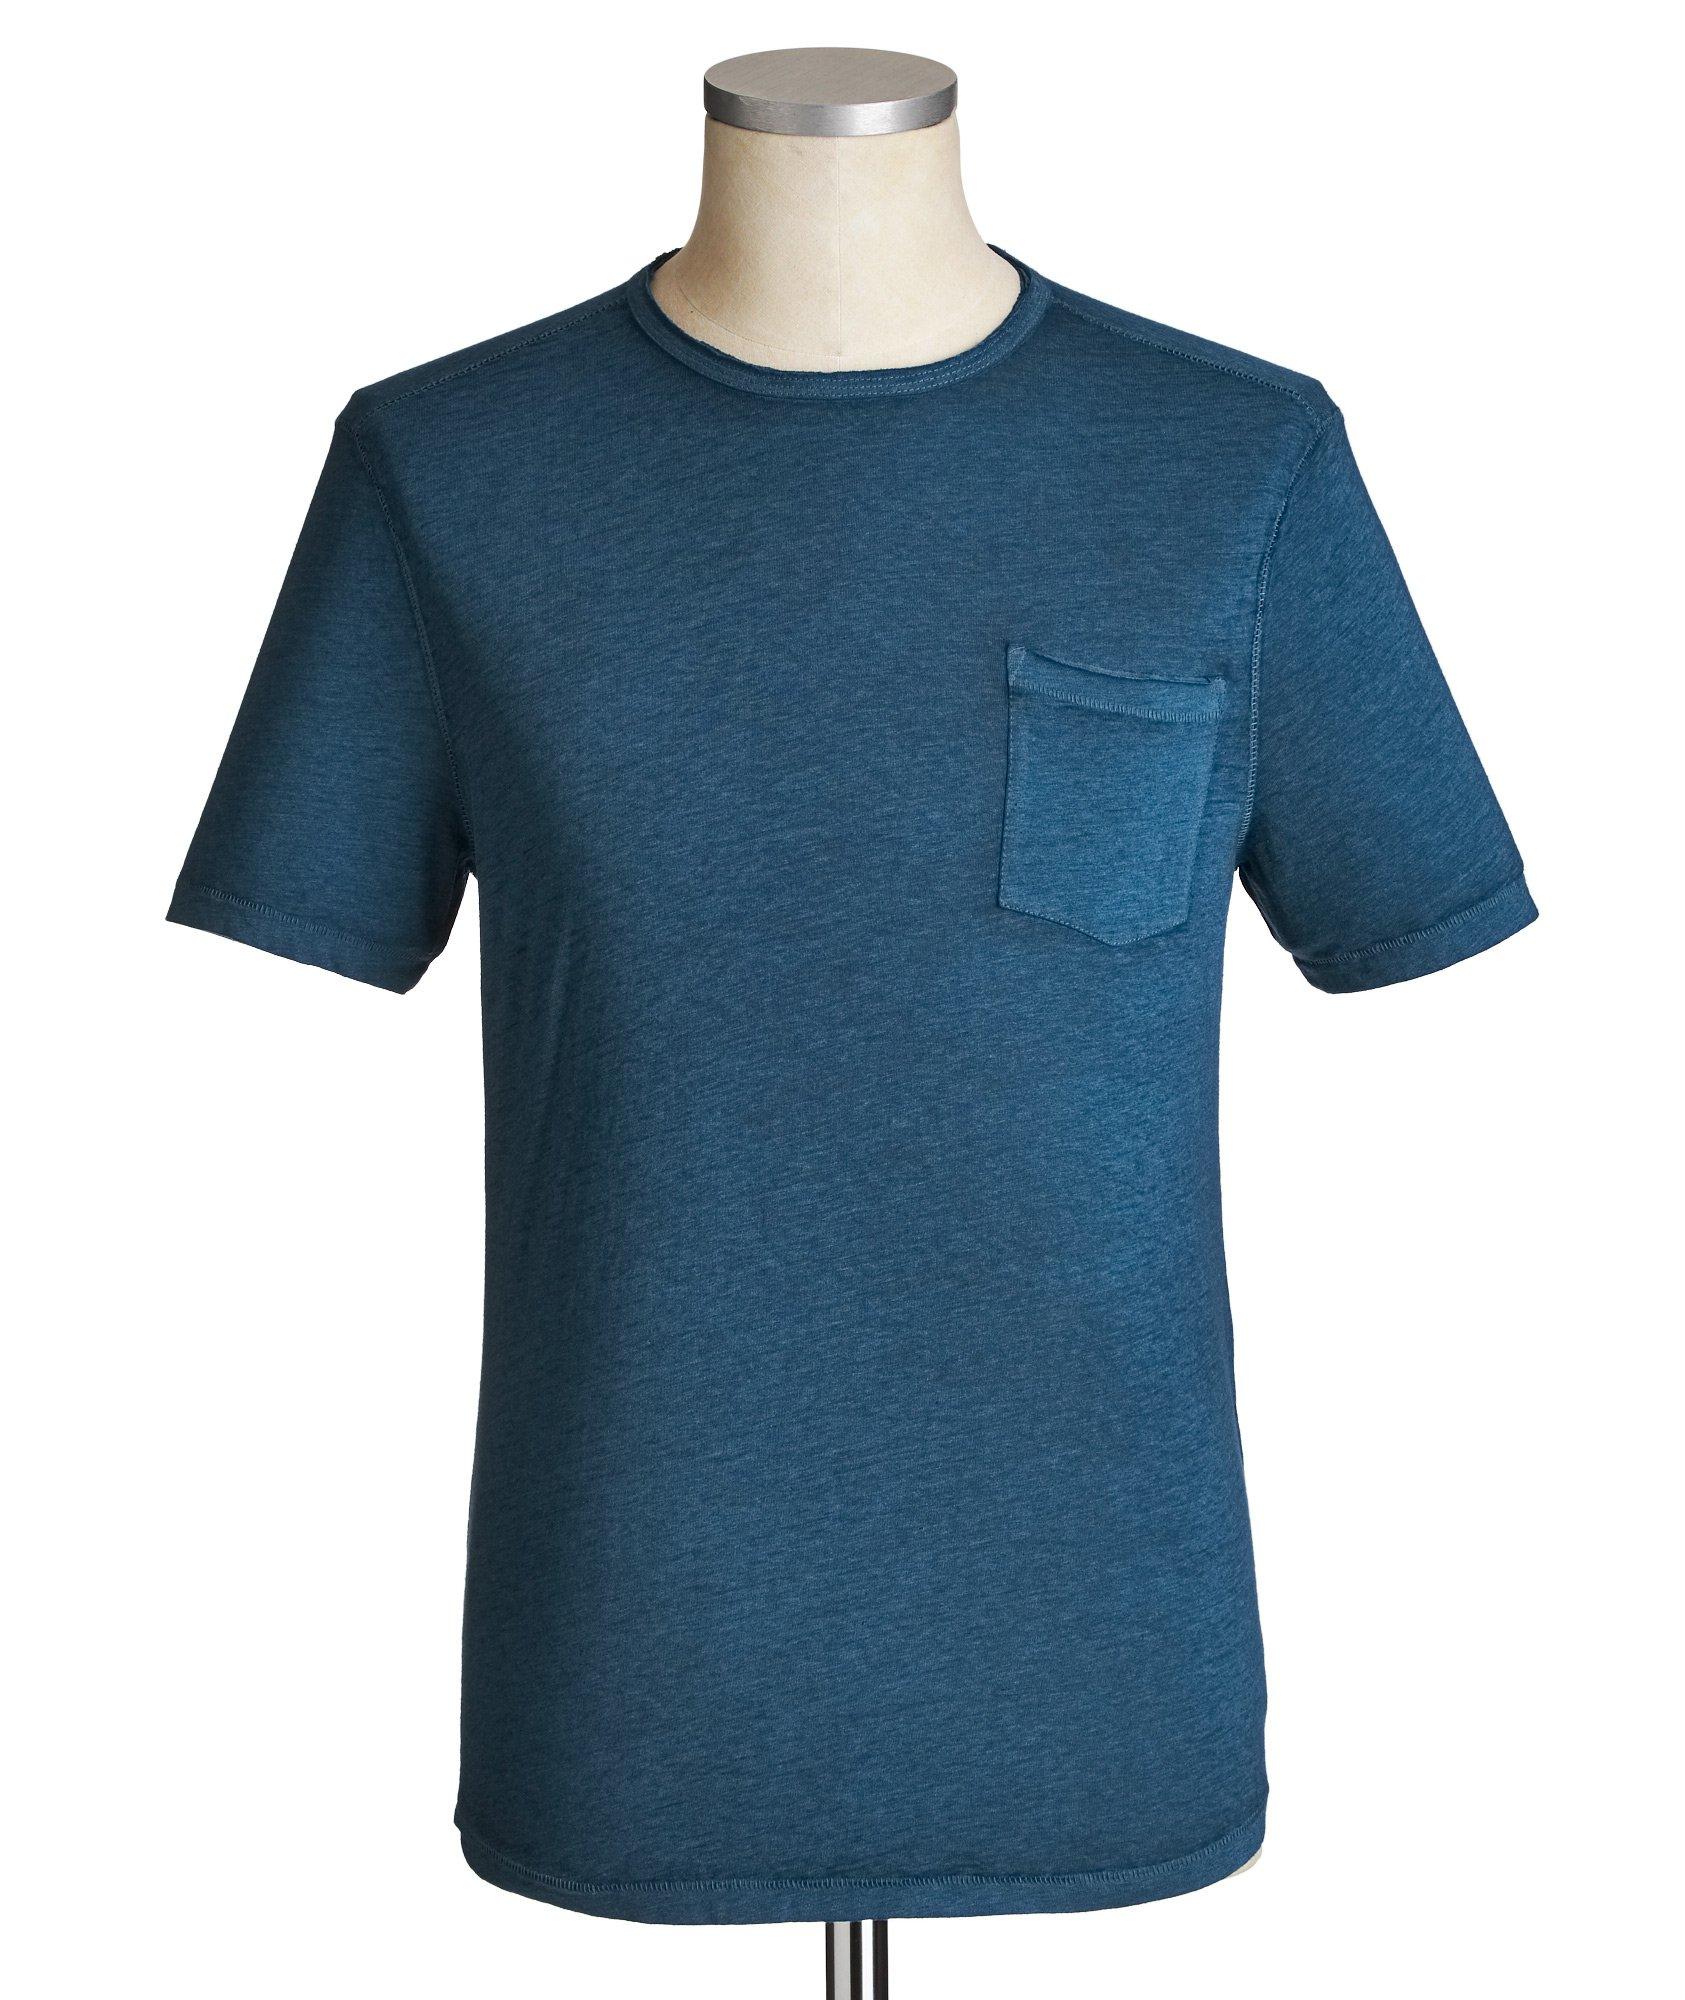 Cotton-Blend Burnout T-Shirt image 0